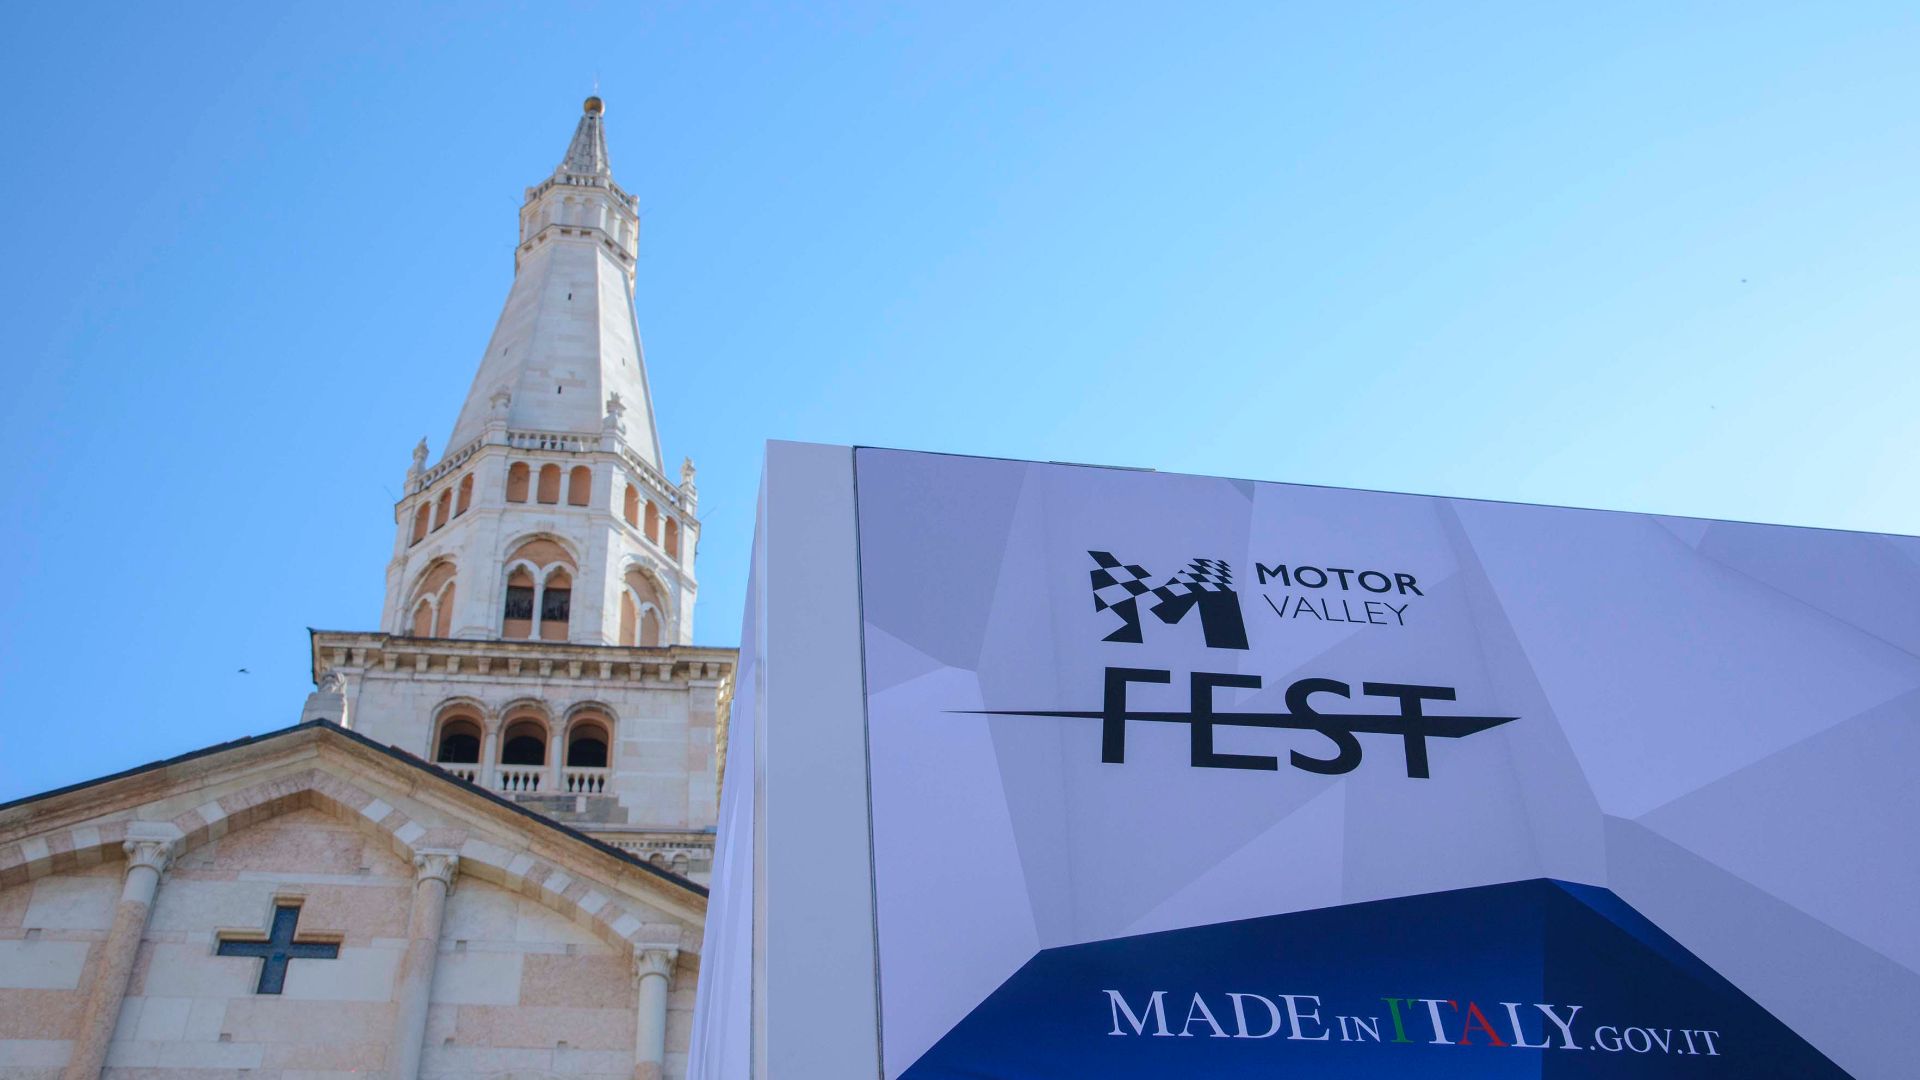 Torna il Motor Valley Fest. A Modena dall'11 al 14 maggio 2023 la quinta edizione